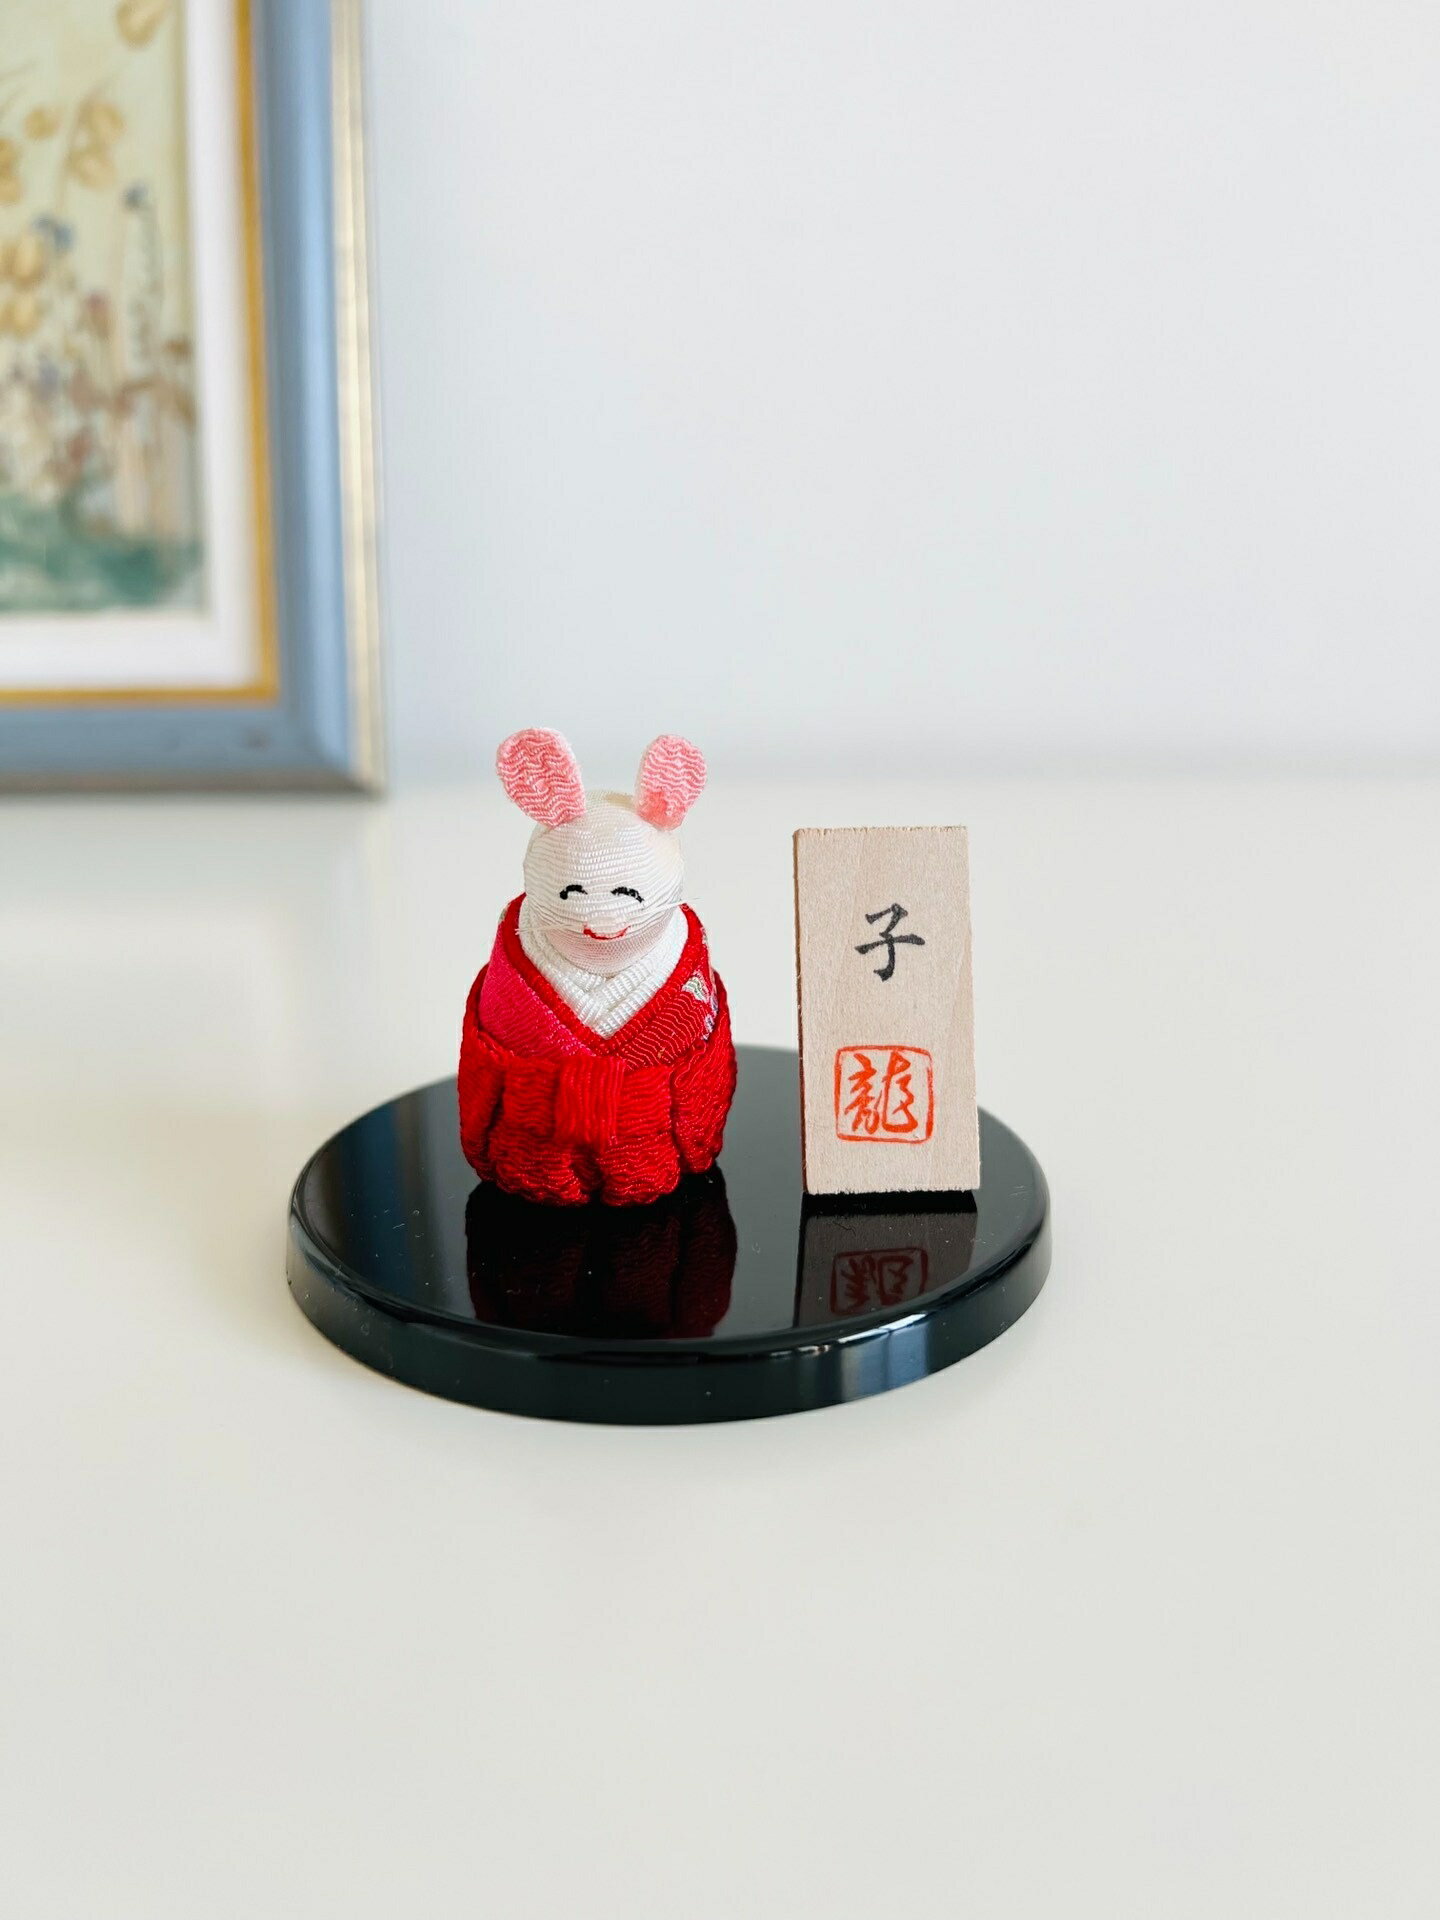 日本中古 鄉土玩具 緣起物 手工 生肖老鼠人形開運置物小擺飾